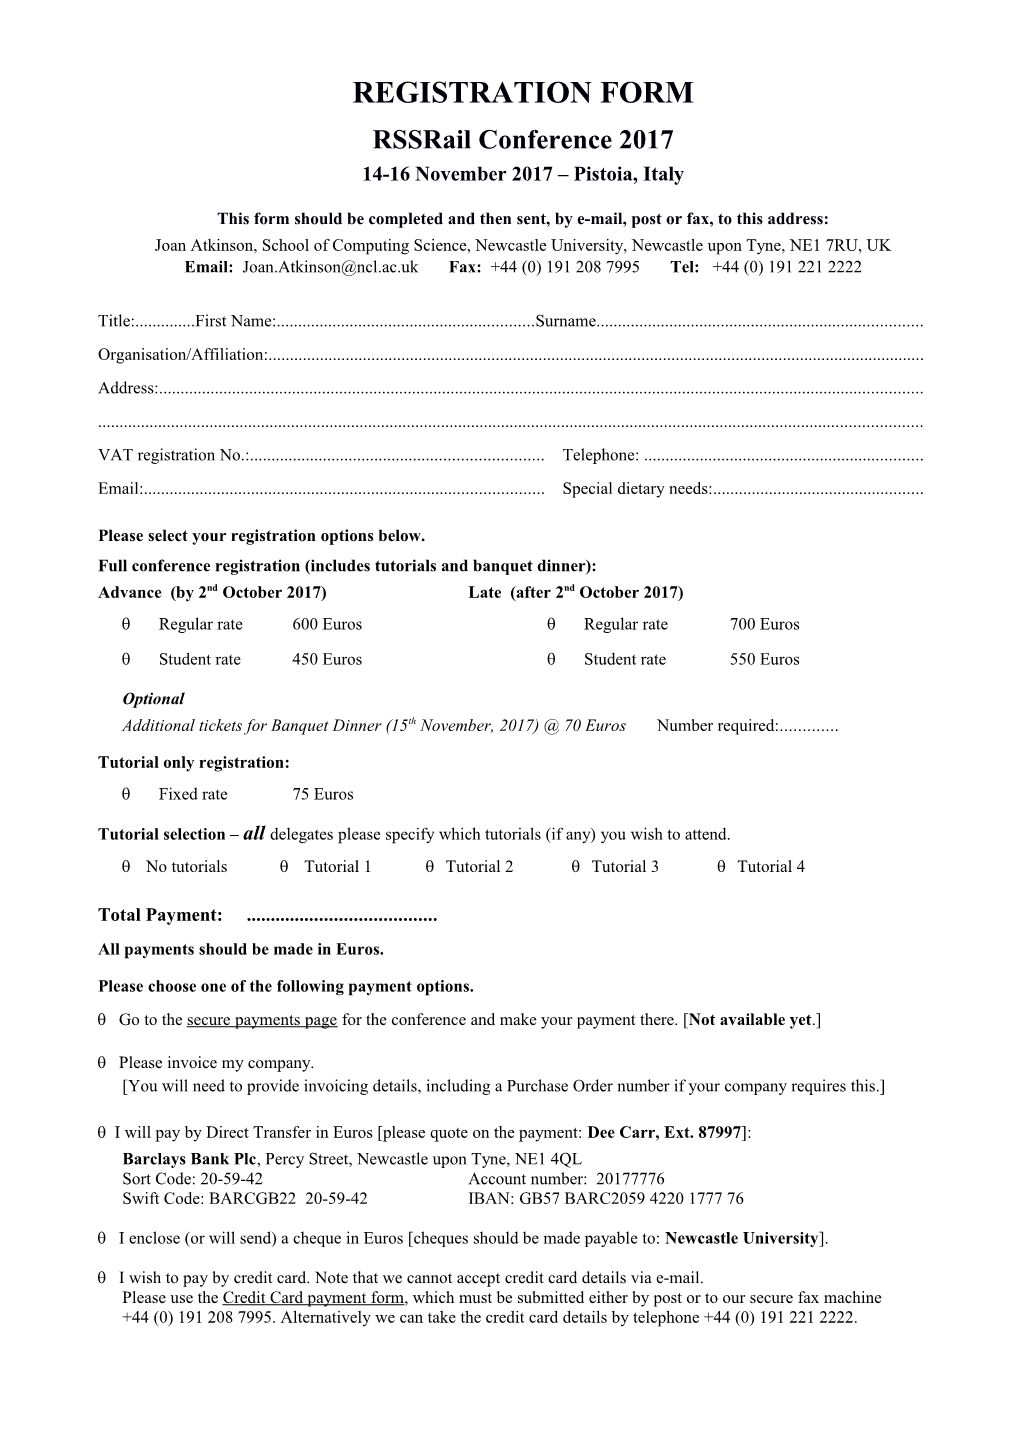 Registration Form s14